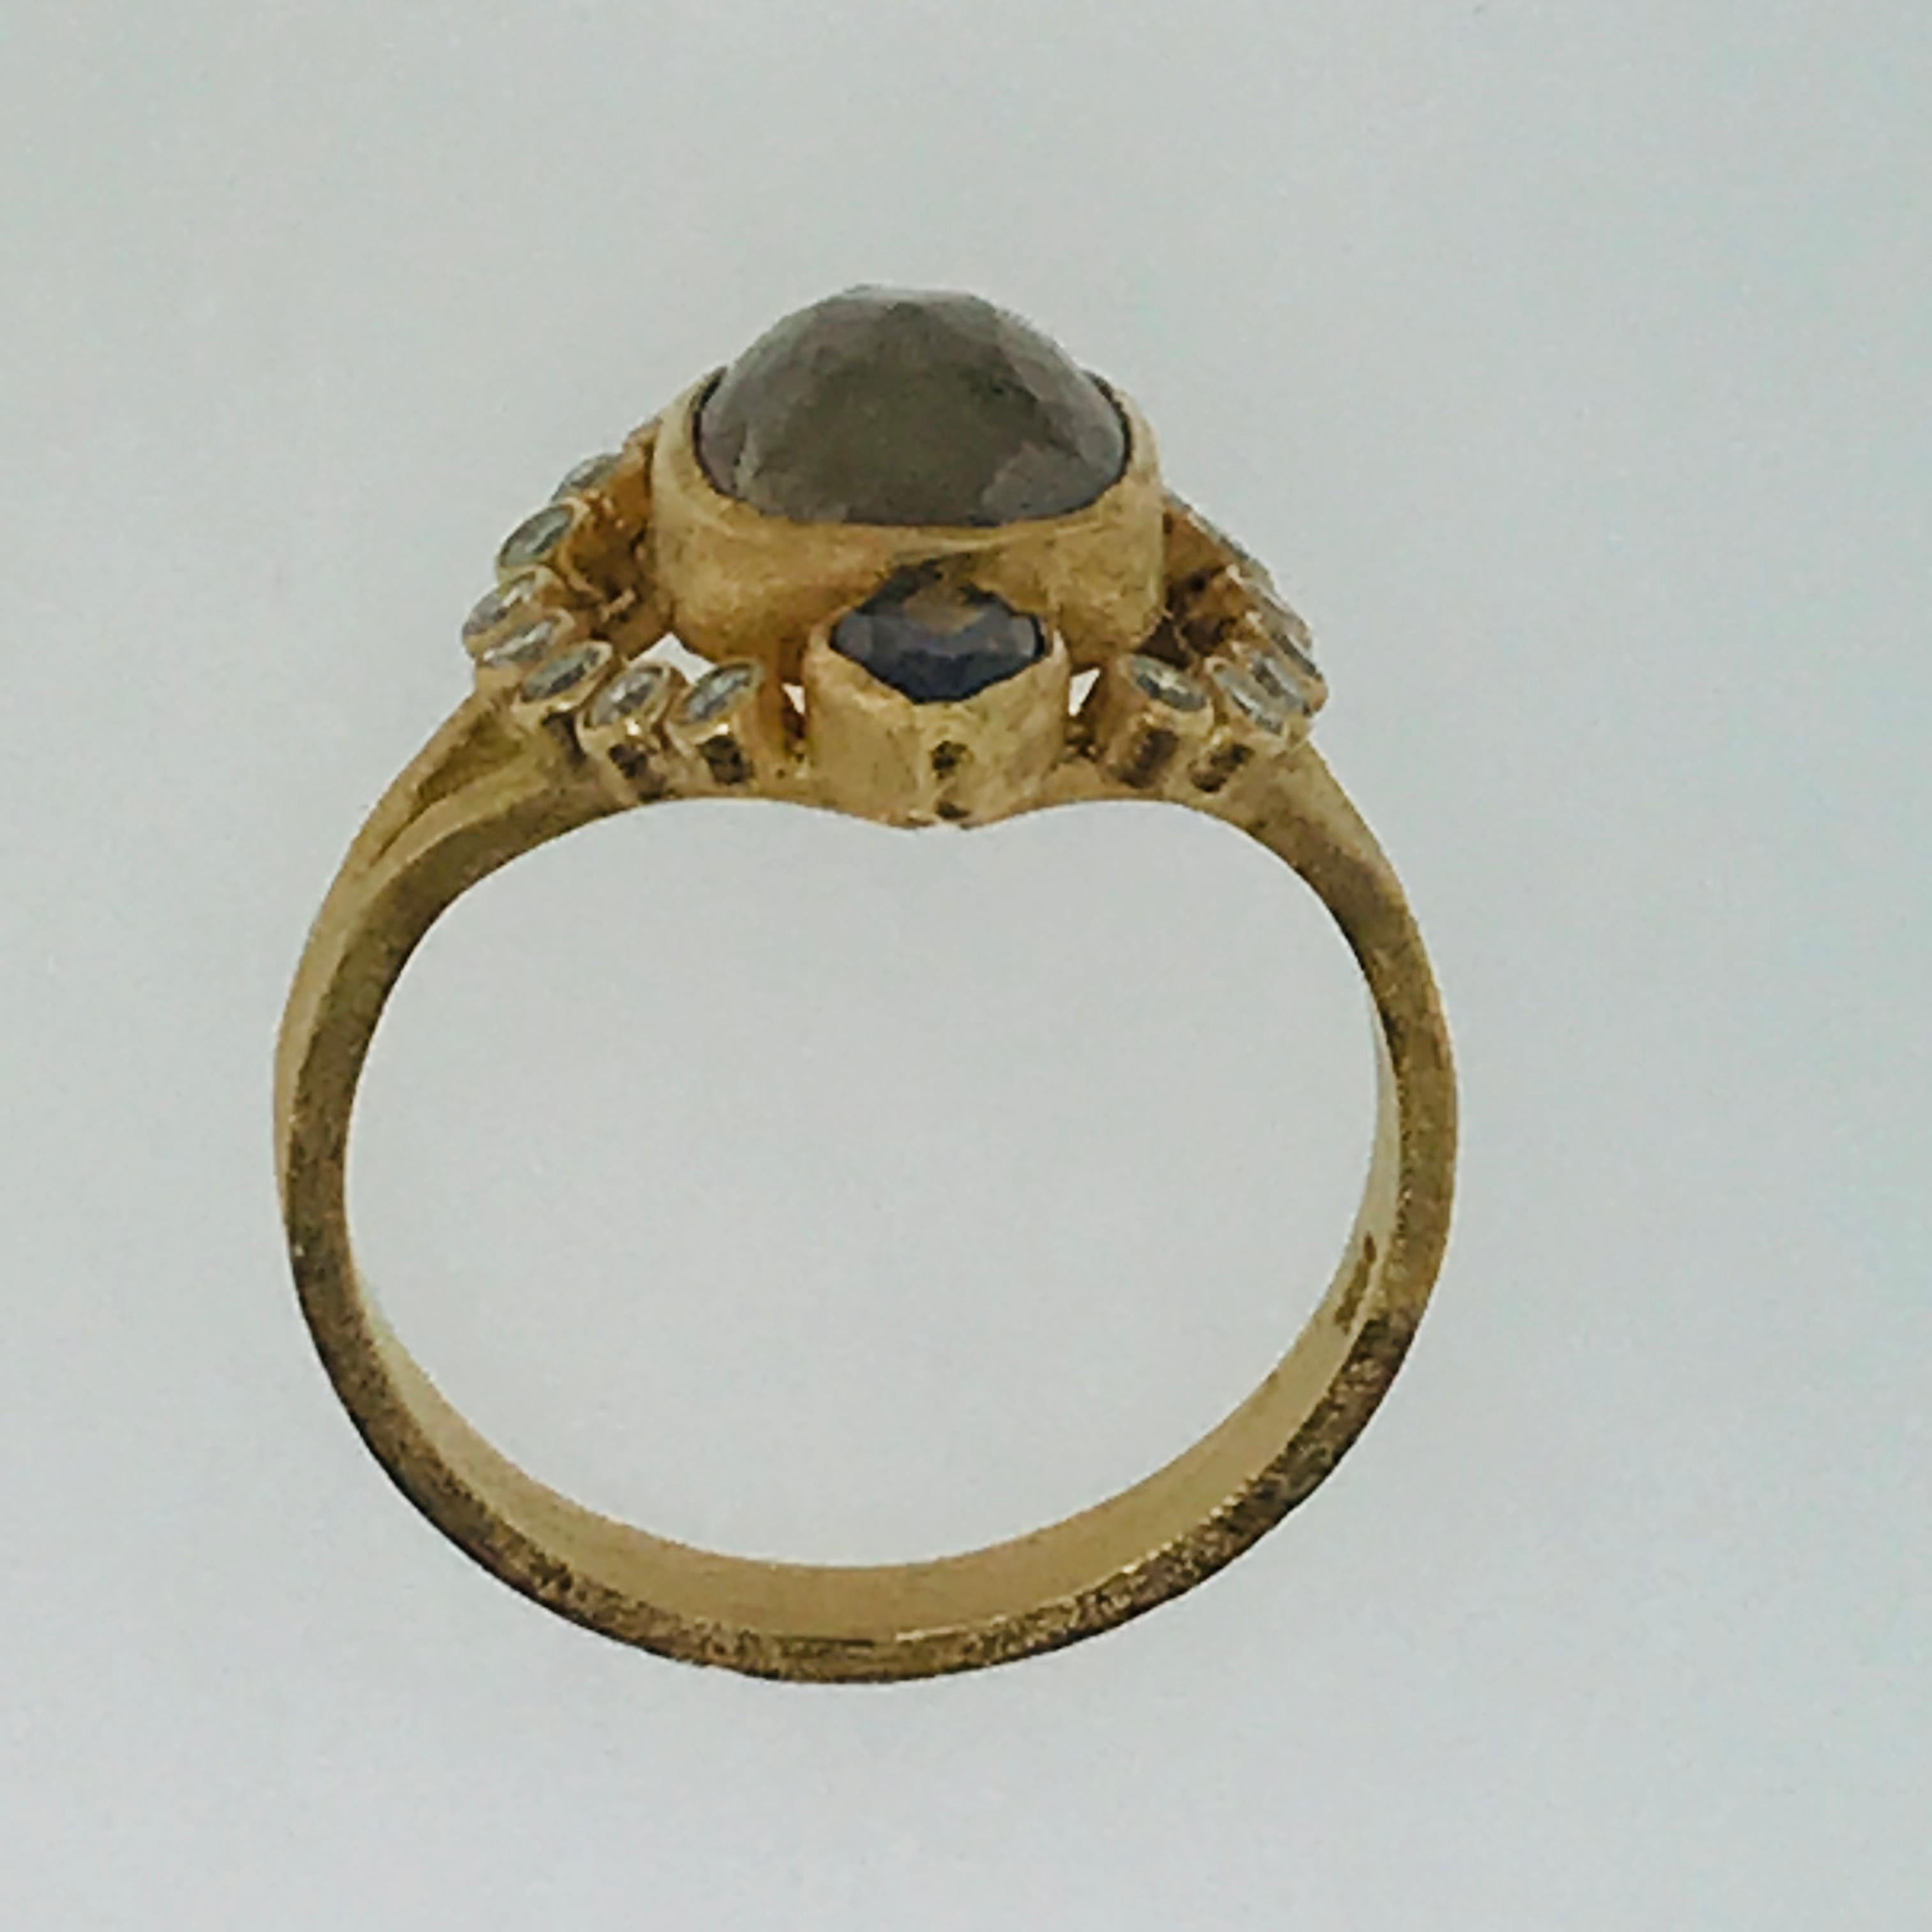 Artisan Rough Diamond Ring, 4 Carat Champagne Diamond Engagement Ring, Original Design